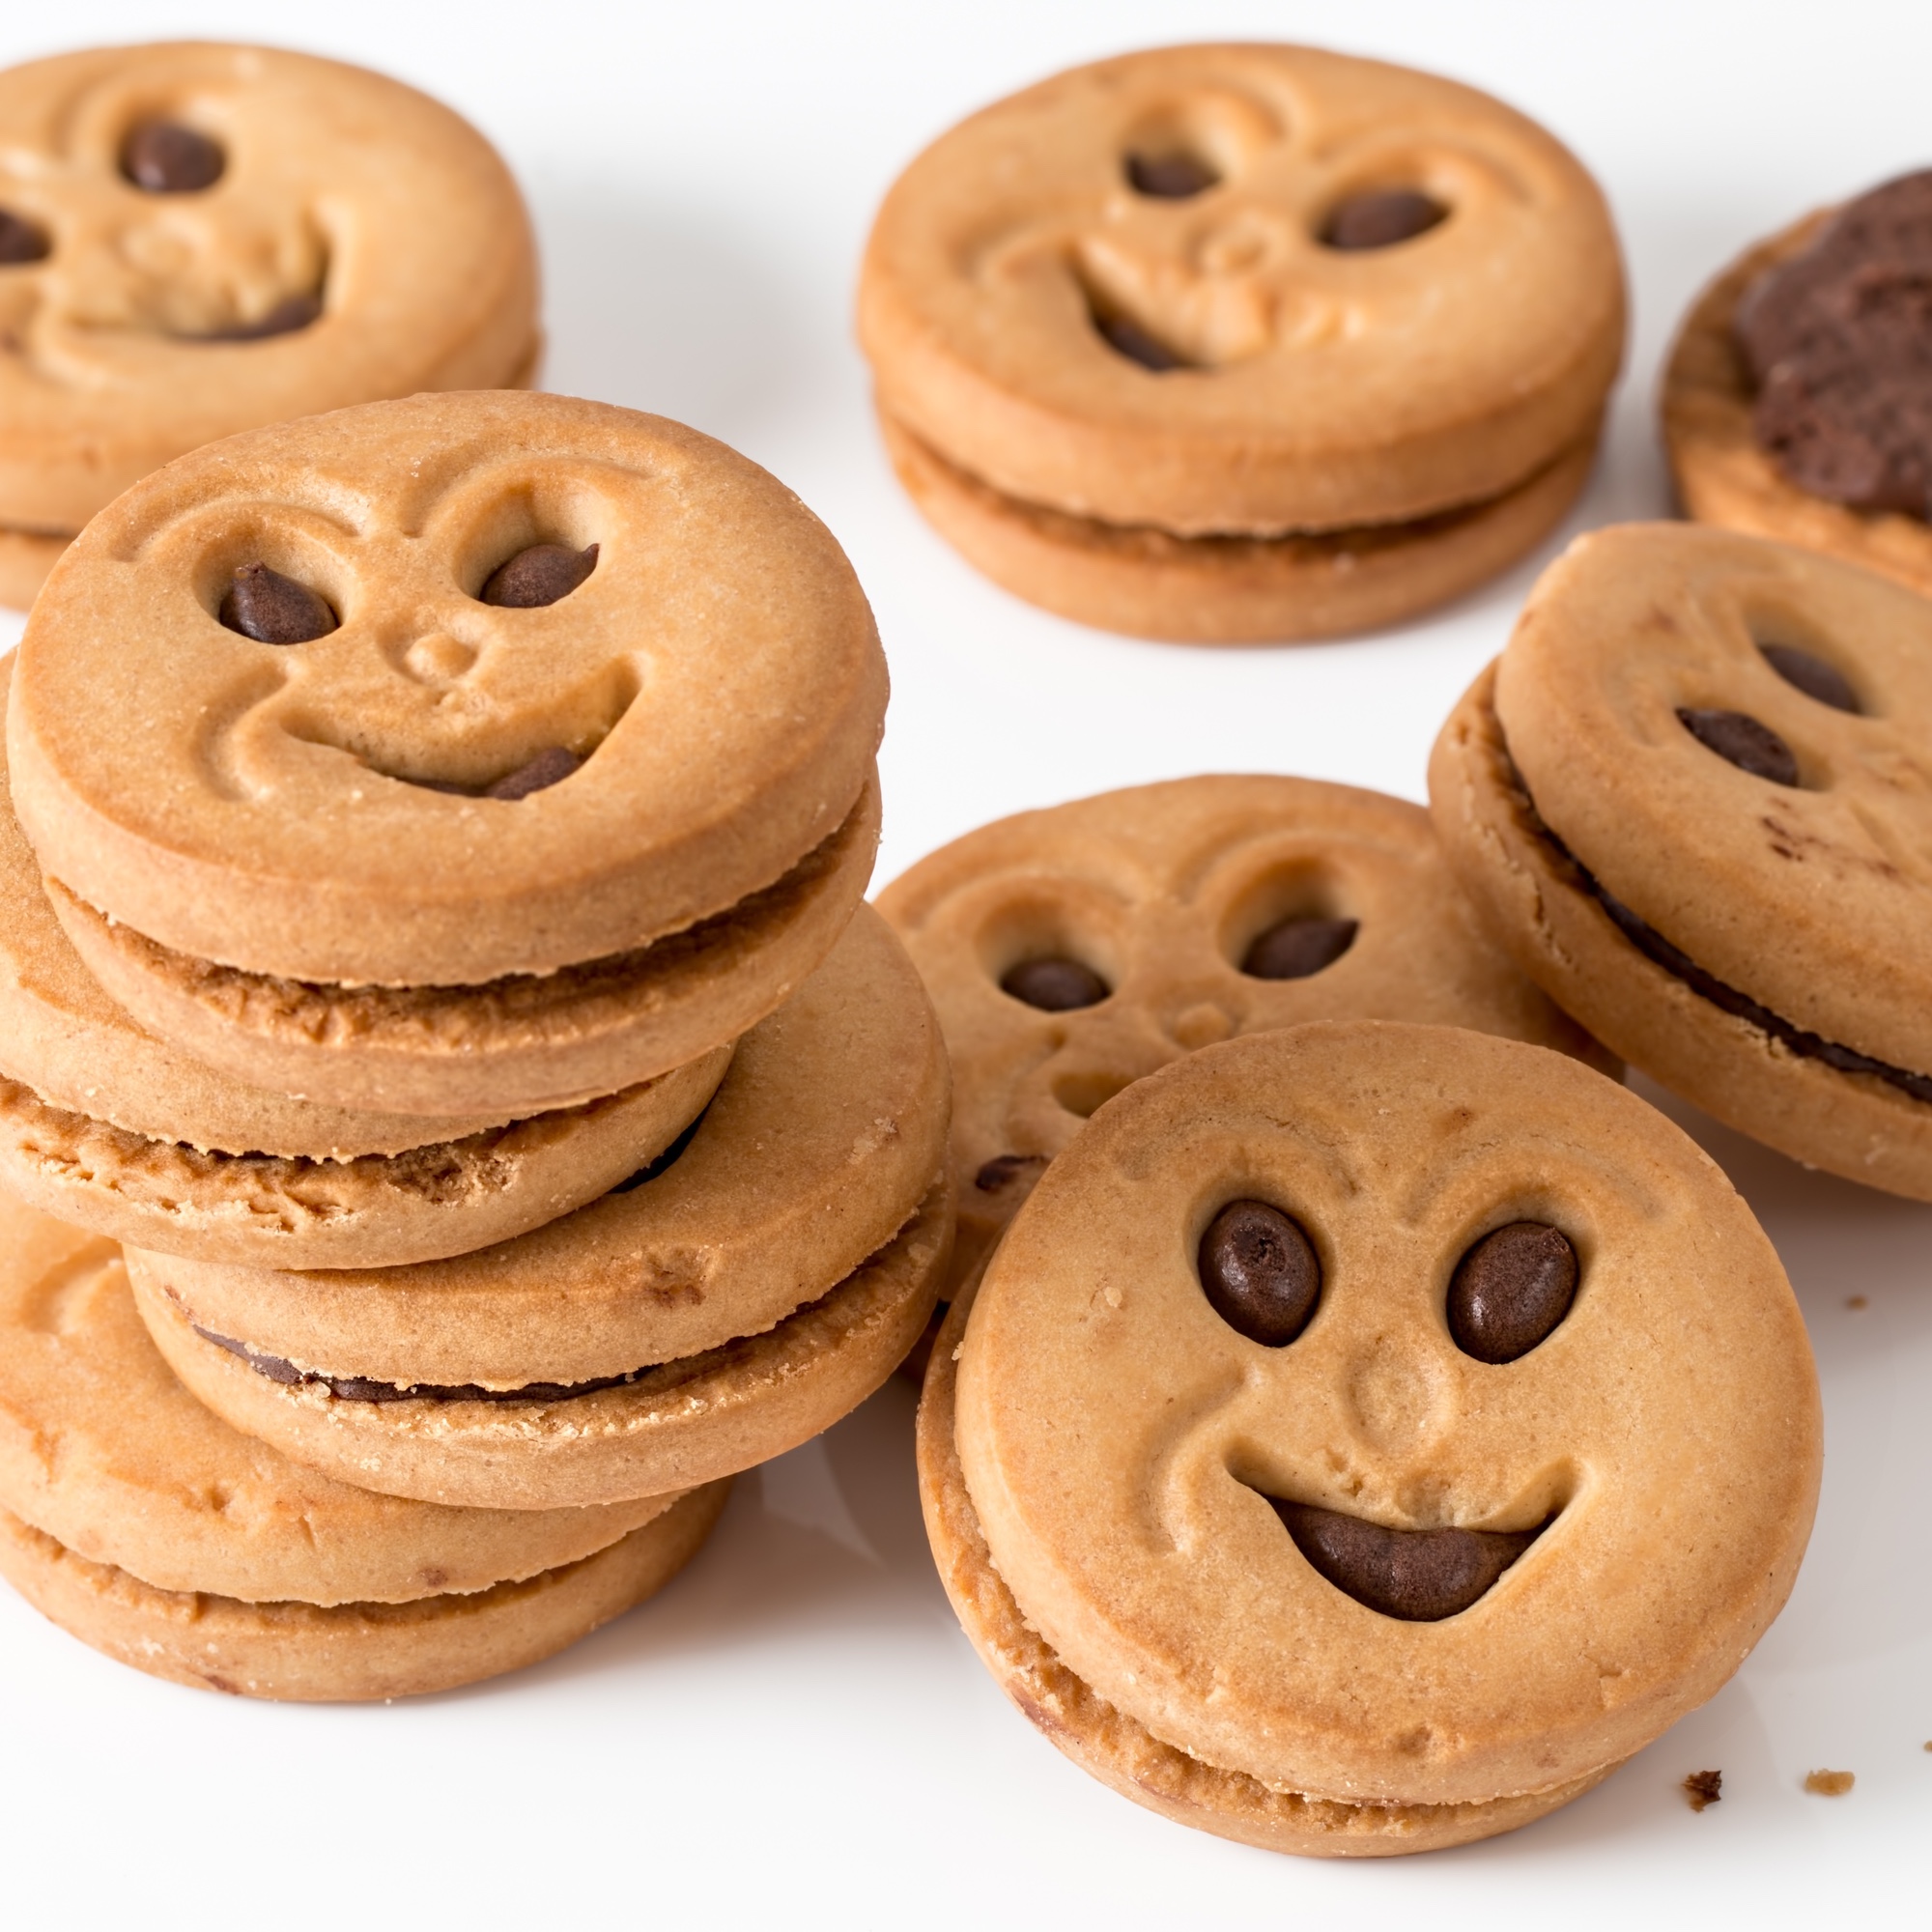 Foto: Cookies (Guetzli bzw. Kekse) mit lachenden Gesichtern